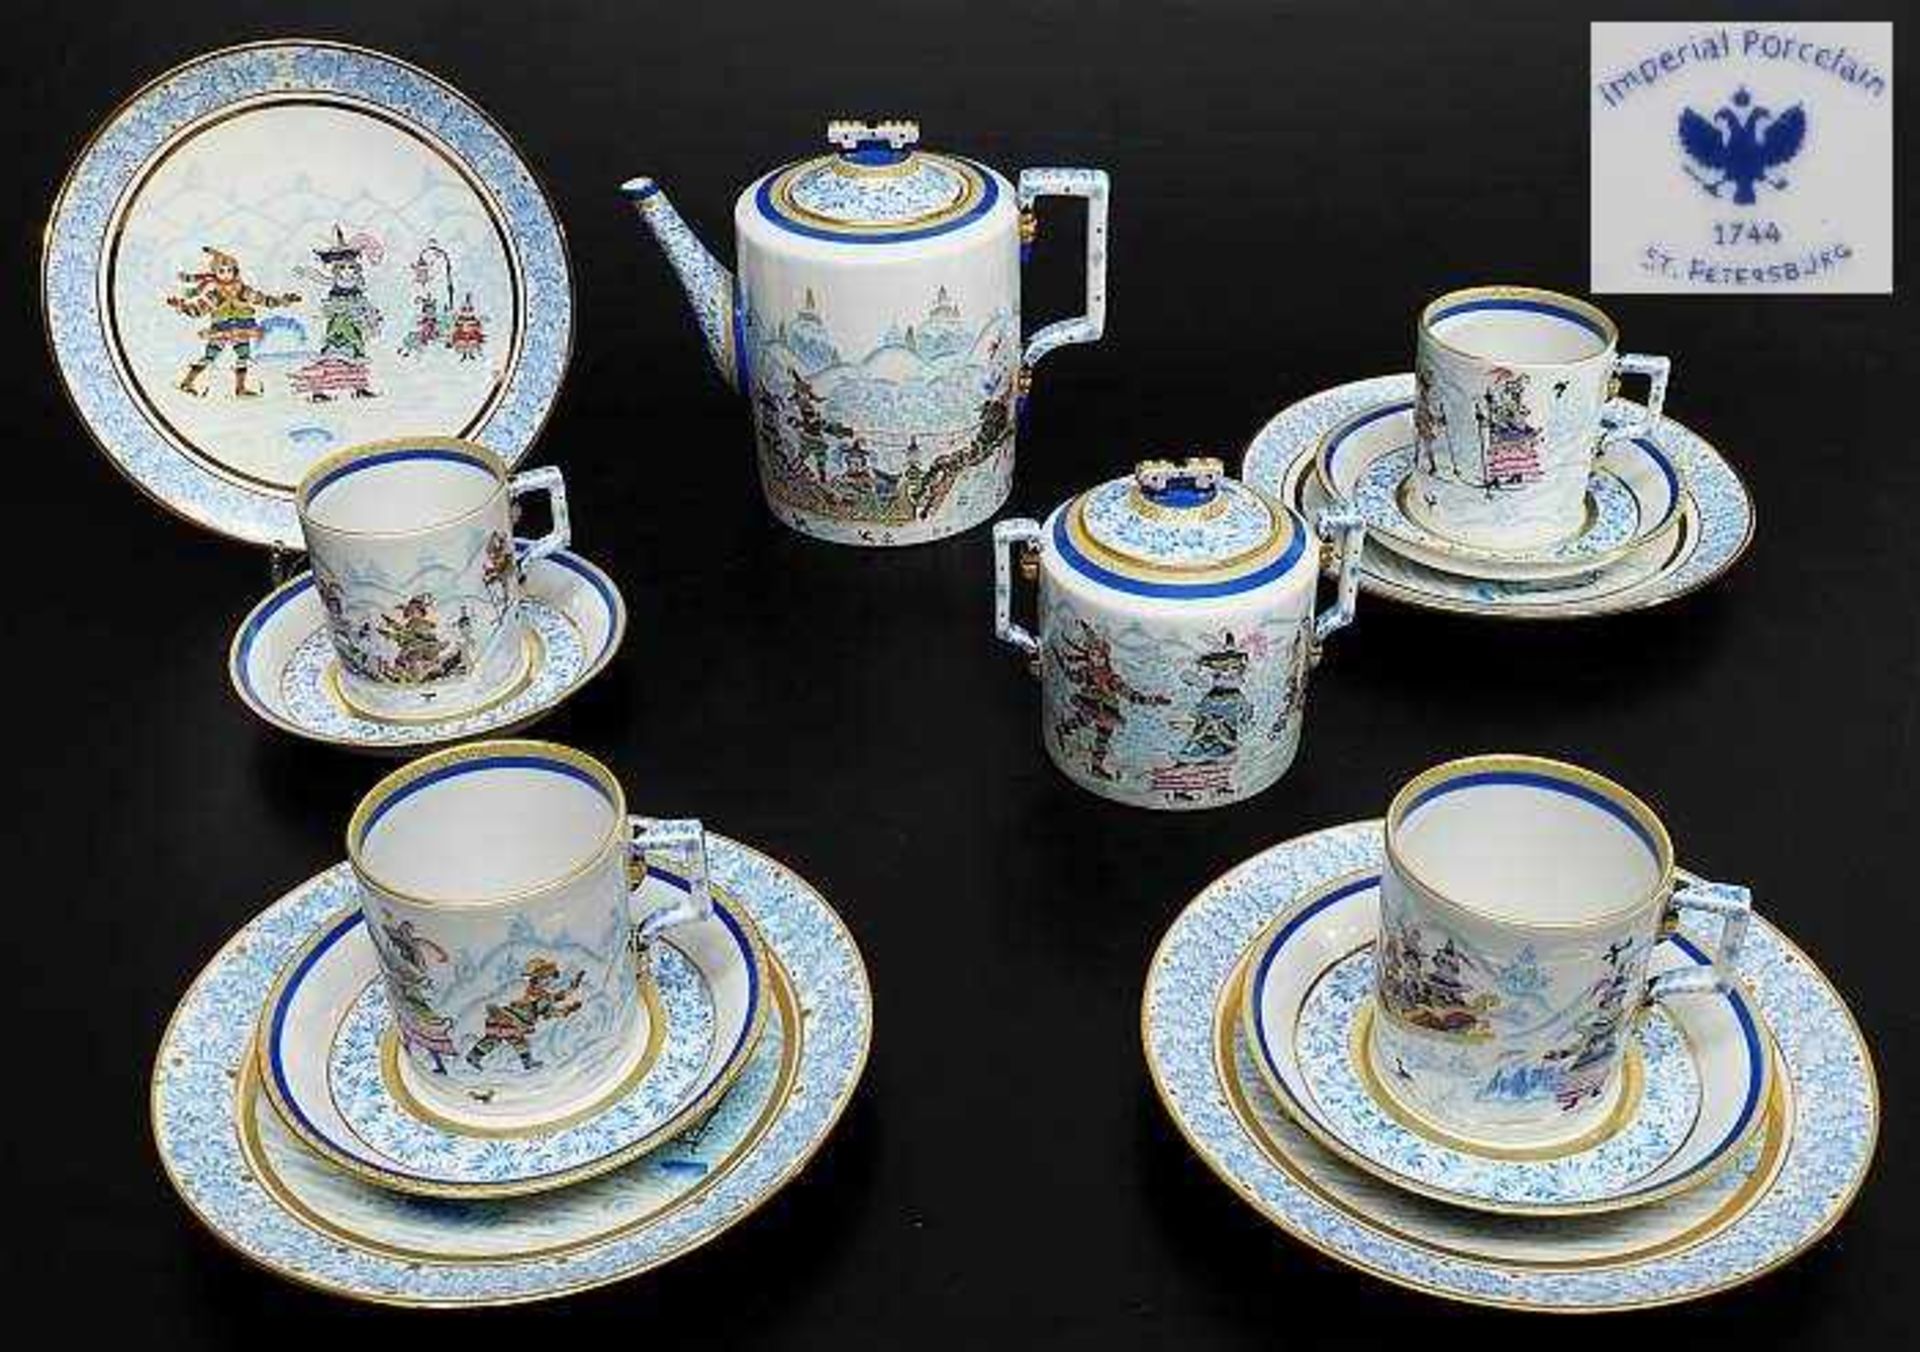 Imperial Porcelan 1744 St. Petersburg. Teeservice, Serie "Winterfreuden".Imperial Porcelan 1744